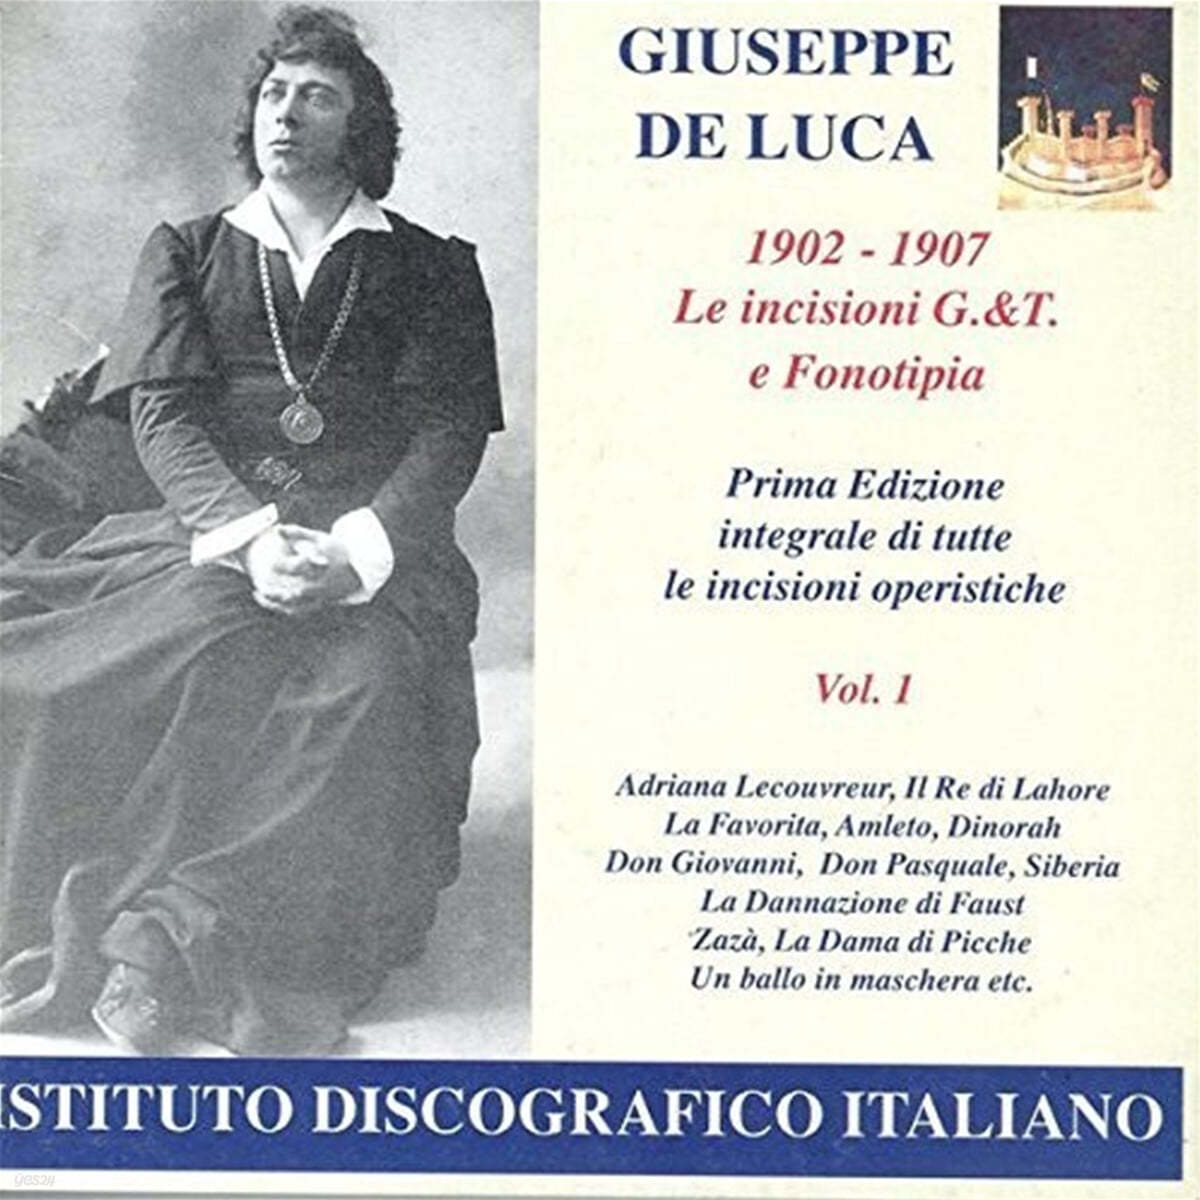 Giuseppe de Luca 쥬세페 데 루카(1902-1907) (Giuseppe De Luca: Opera Arias)